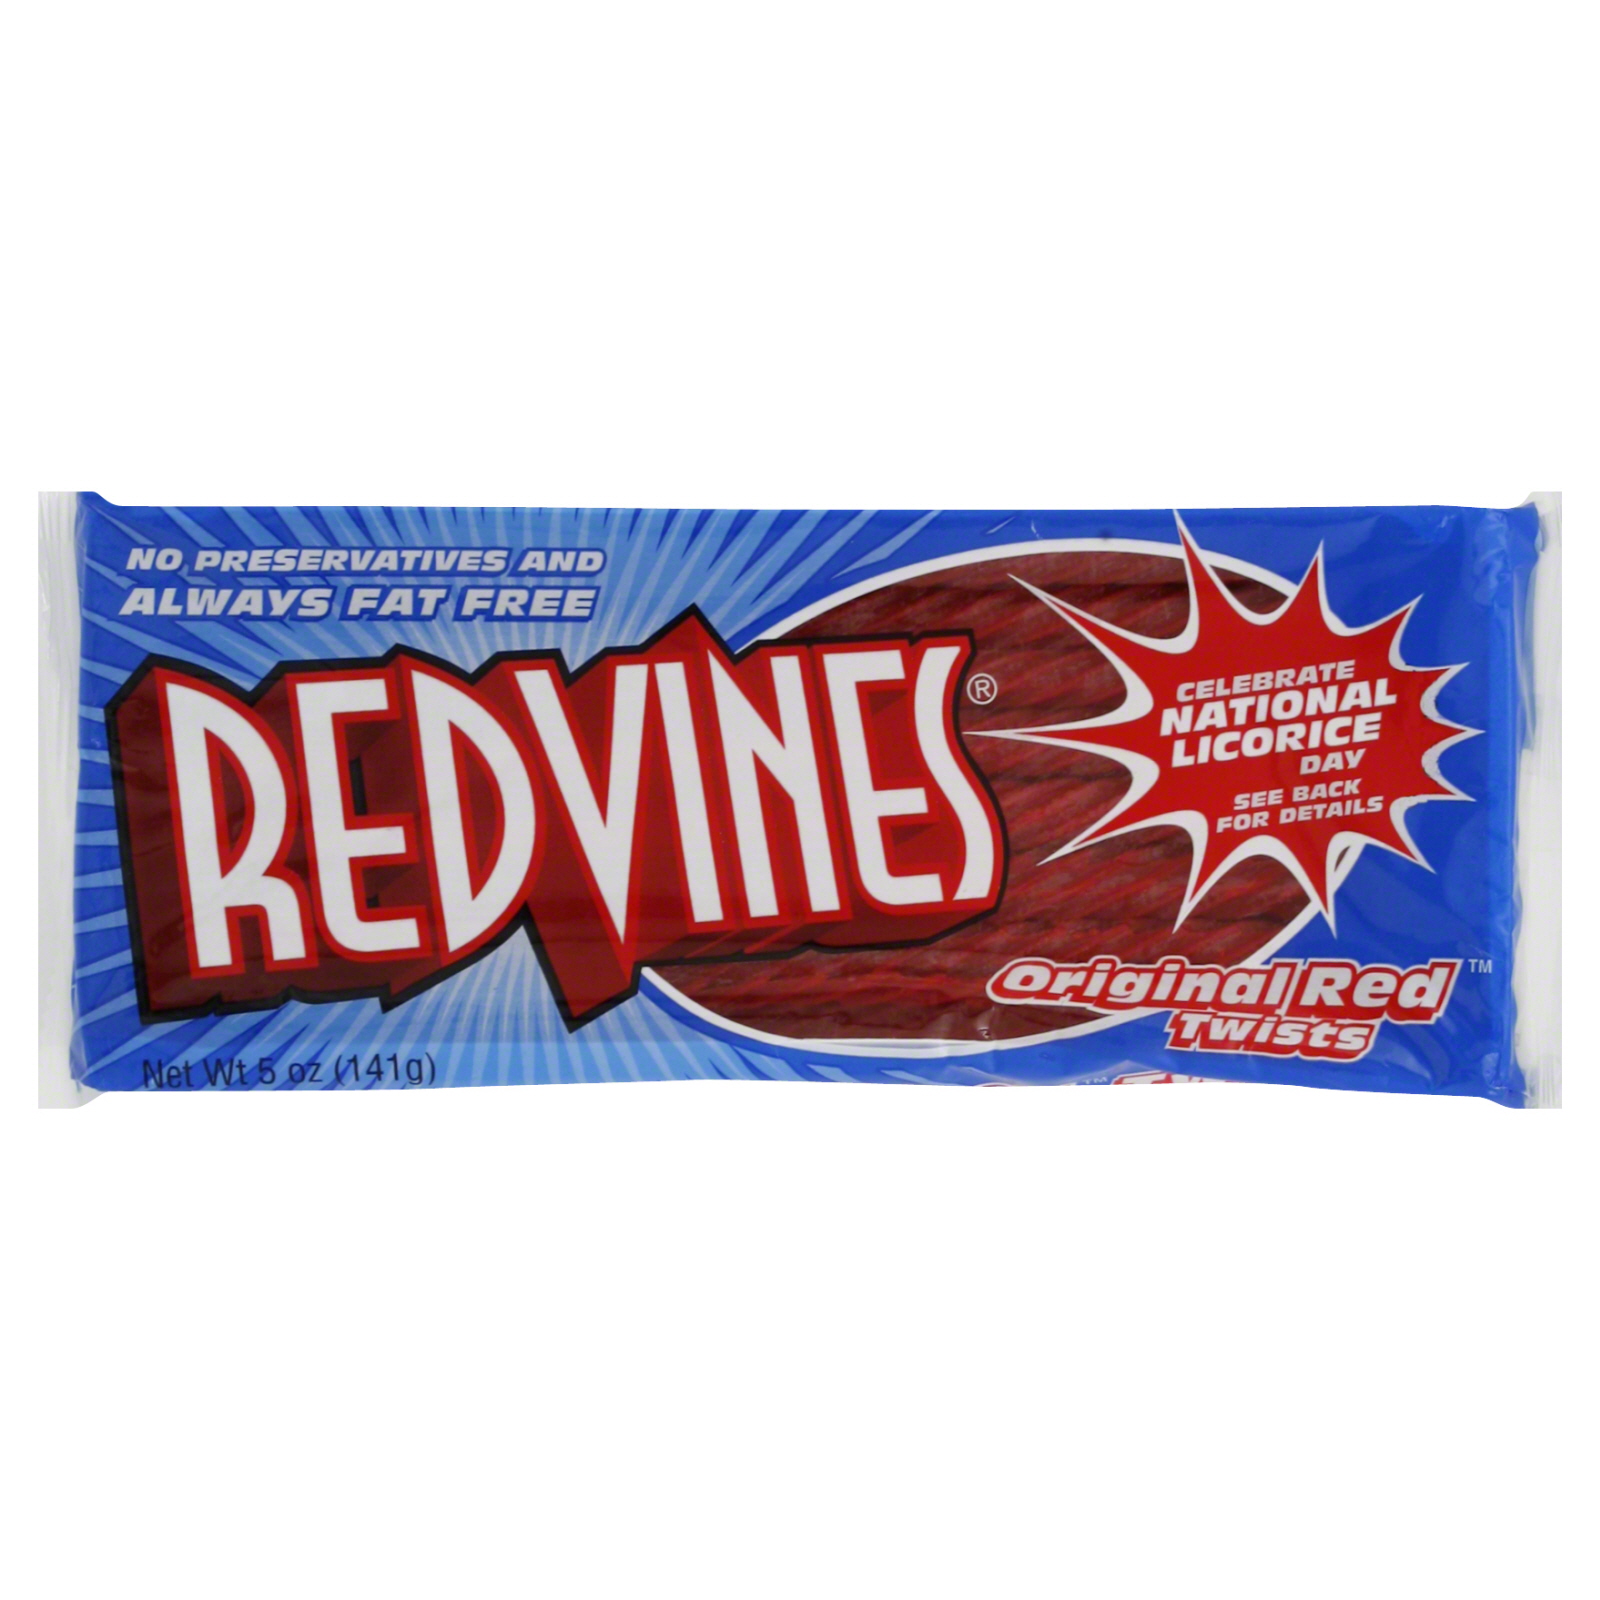 Red Vines Twists, Original Red, 5 oz (141 g)